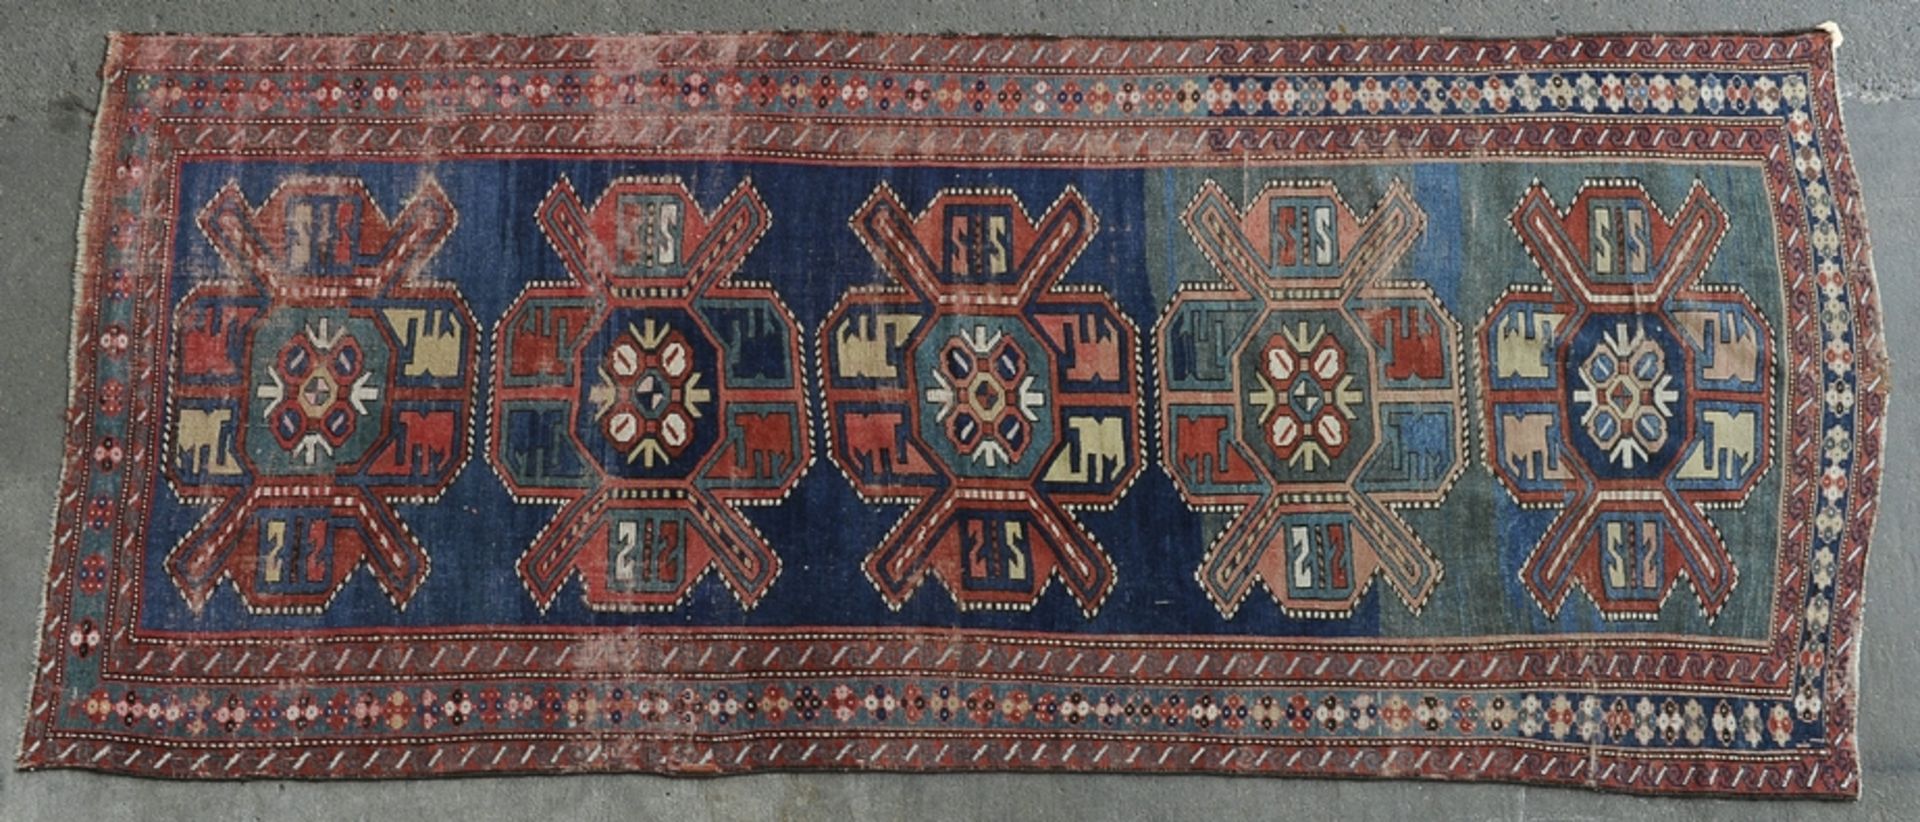 Alte oder antike Teppichgalerie, Kaukasus-Region, abstrakte, geometrische Dekore. Alters- und Gebra